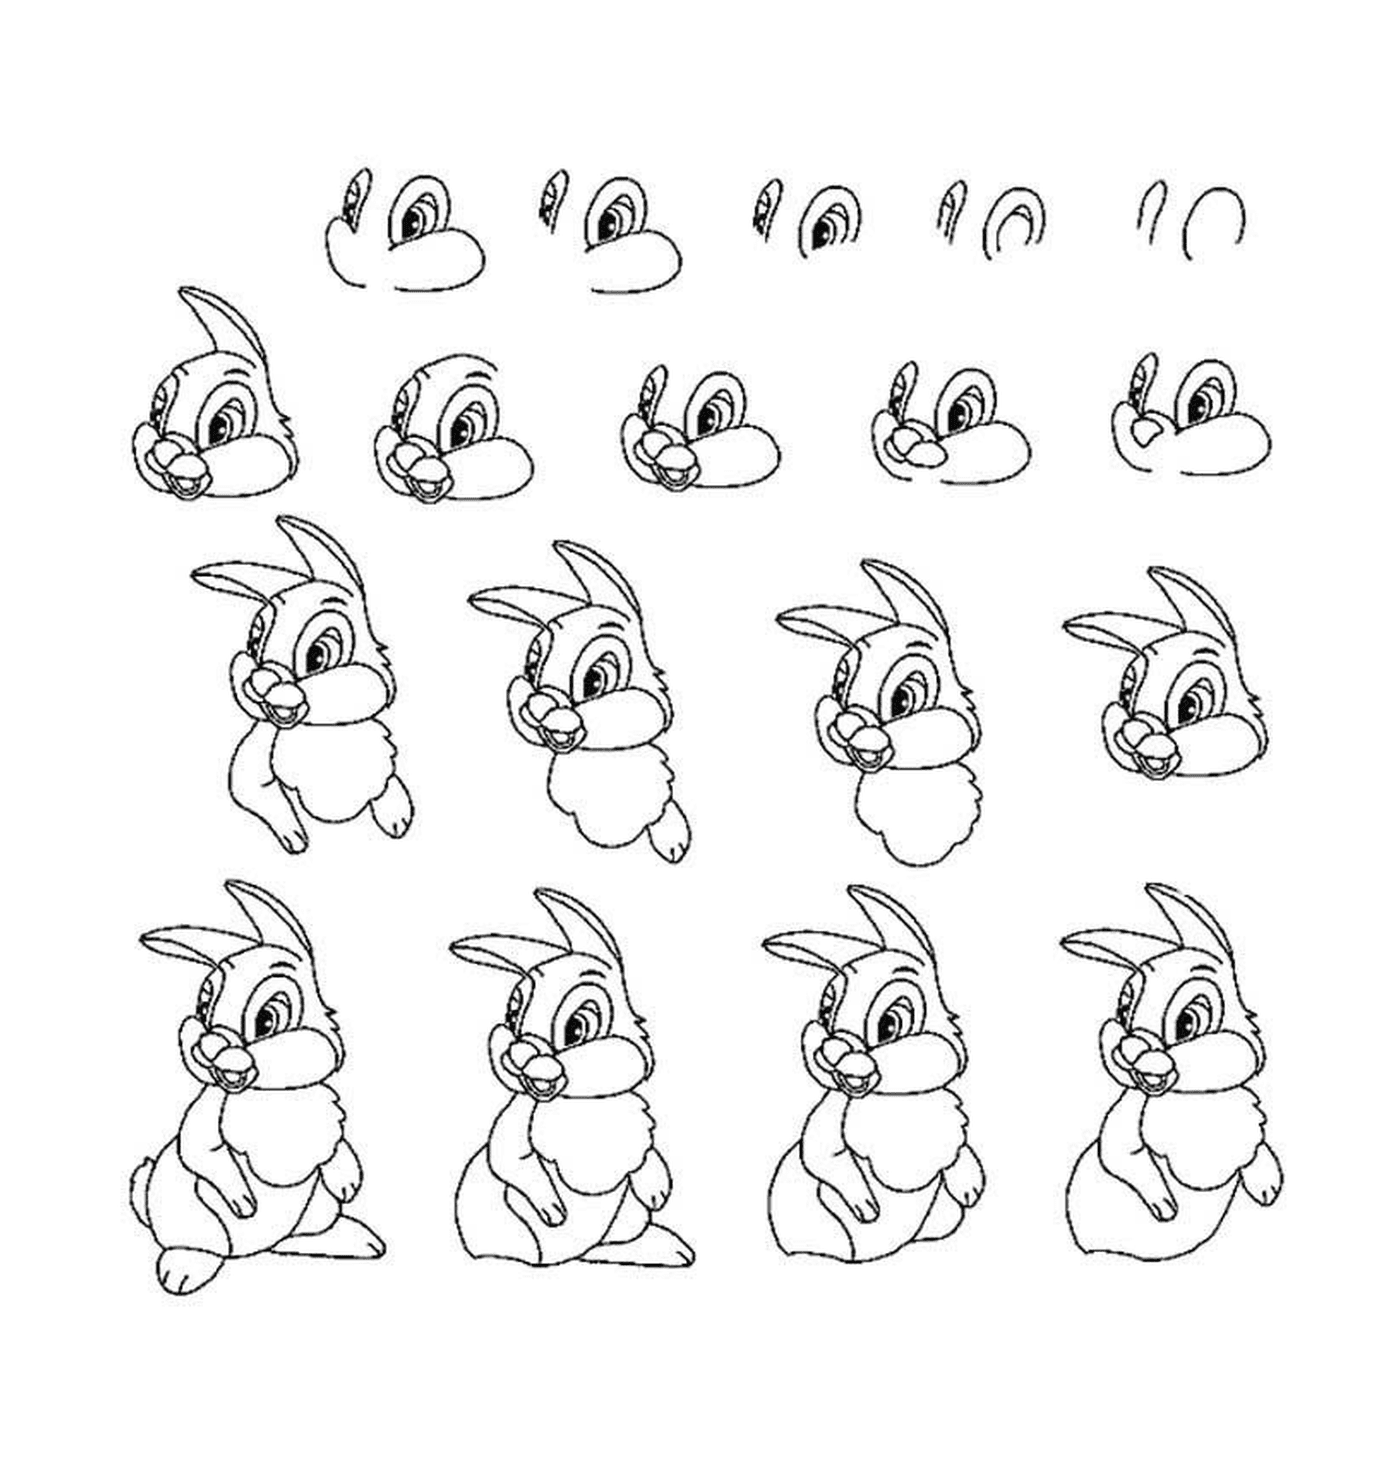  Verschiedene Posen eines Kaninchens 